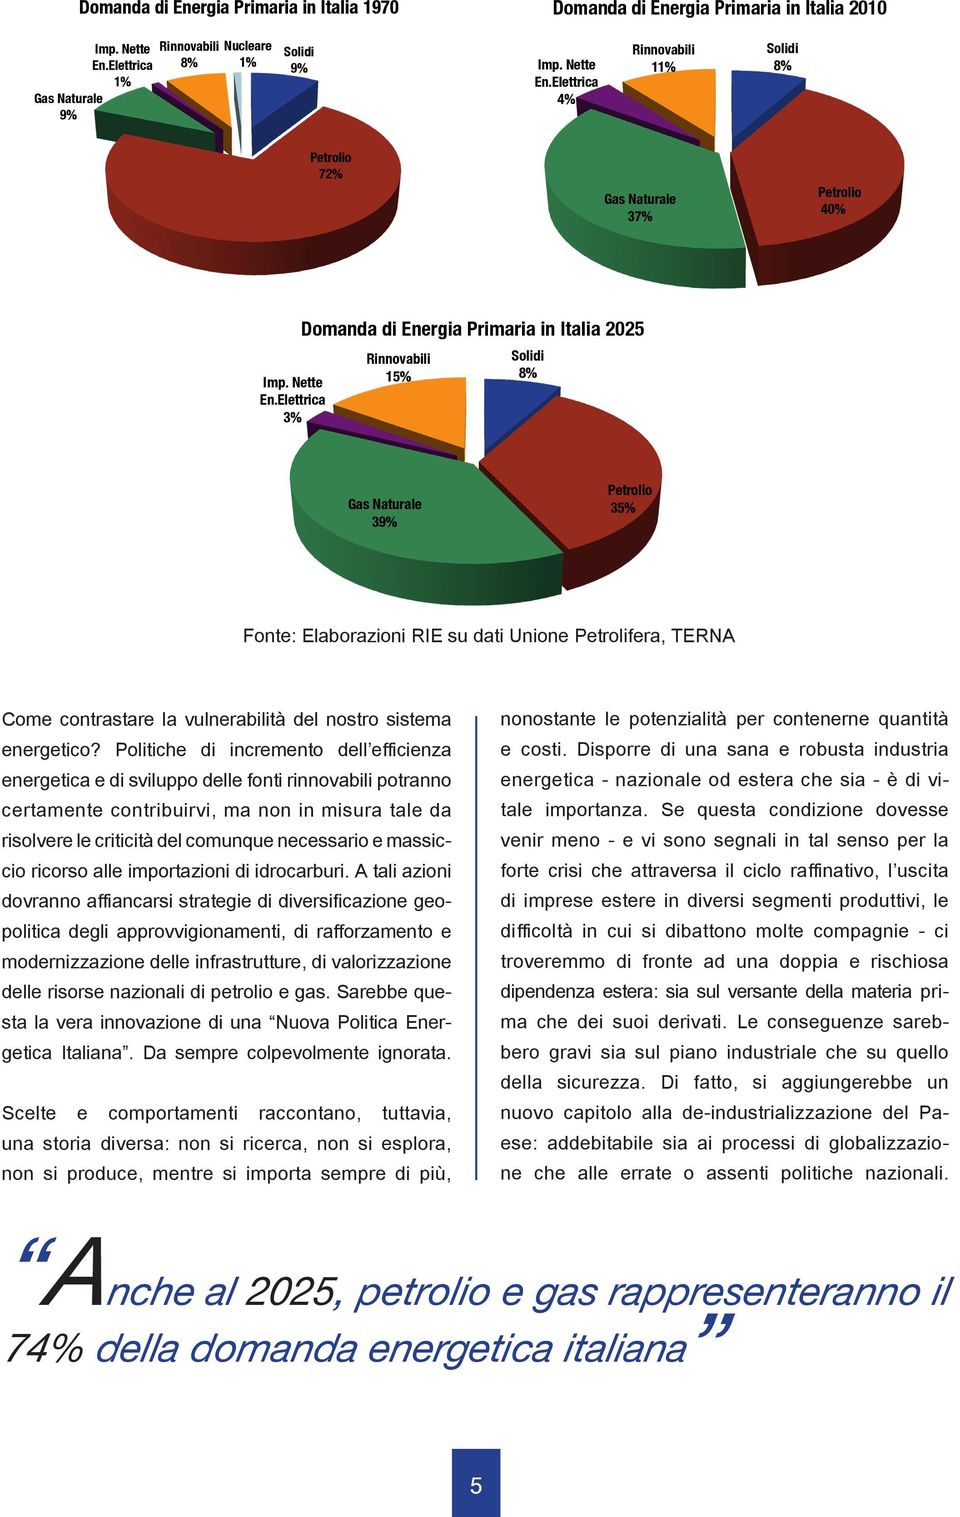 Elettrica 3% Domanda di Energia Primaria in Italia 2025 Rinnovabili 15% Solidi 8% Gas Naturale 39% Petrolio 35% Fonte: Elaborazioni RIE su dati Unione Petrolifera, TERNA Come contrastare la